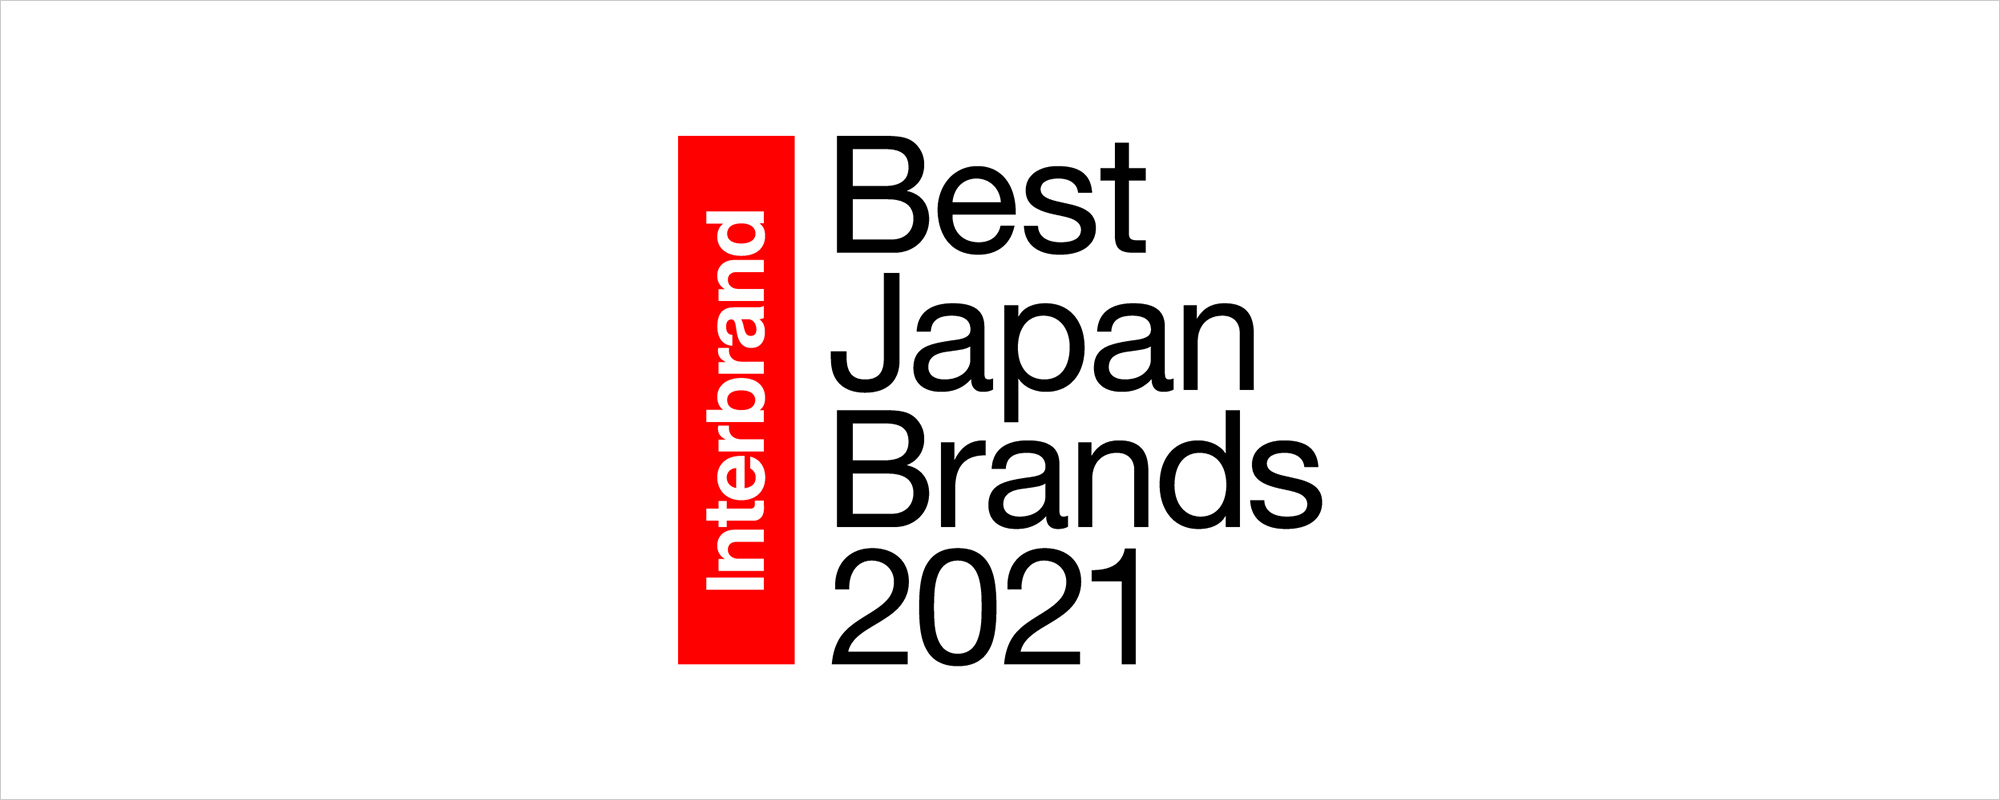 [ 画像 ] 「Best Japan Brands 2021」で「ヤマハ」ブランドが30位に上昇